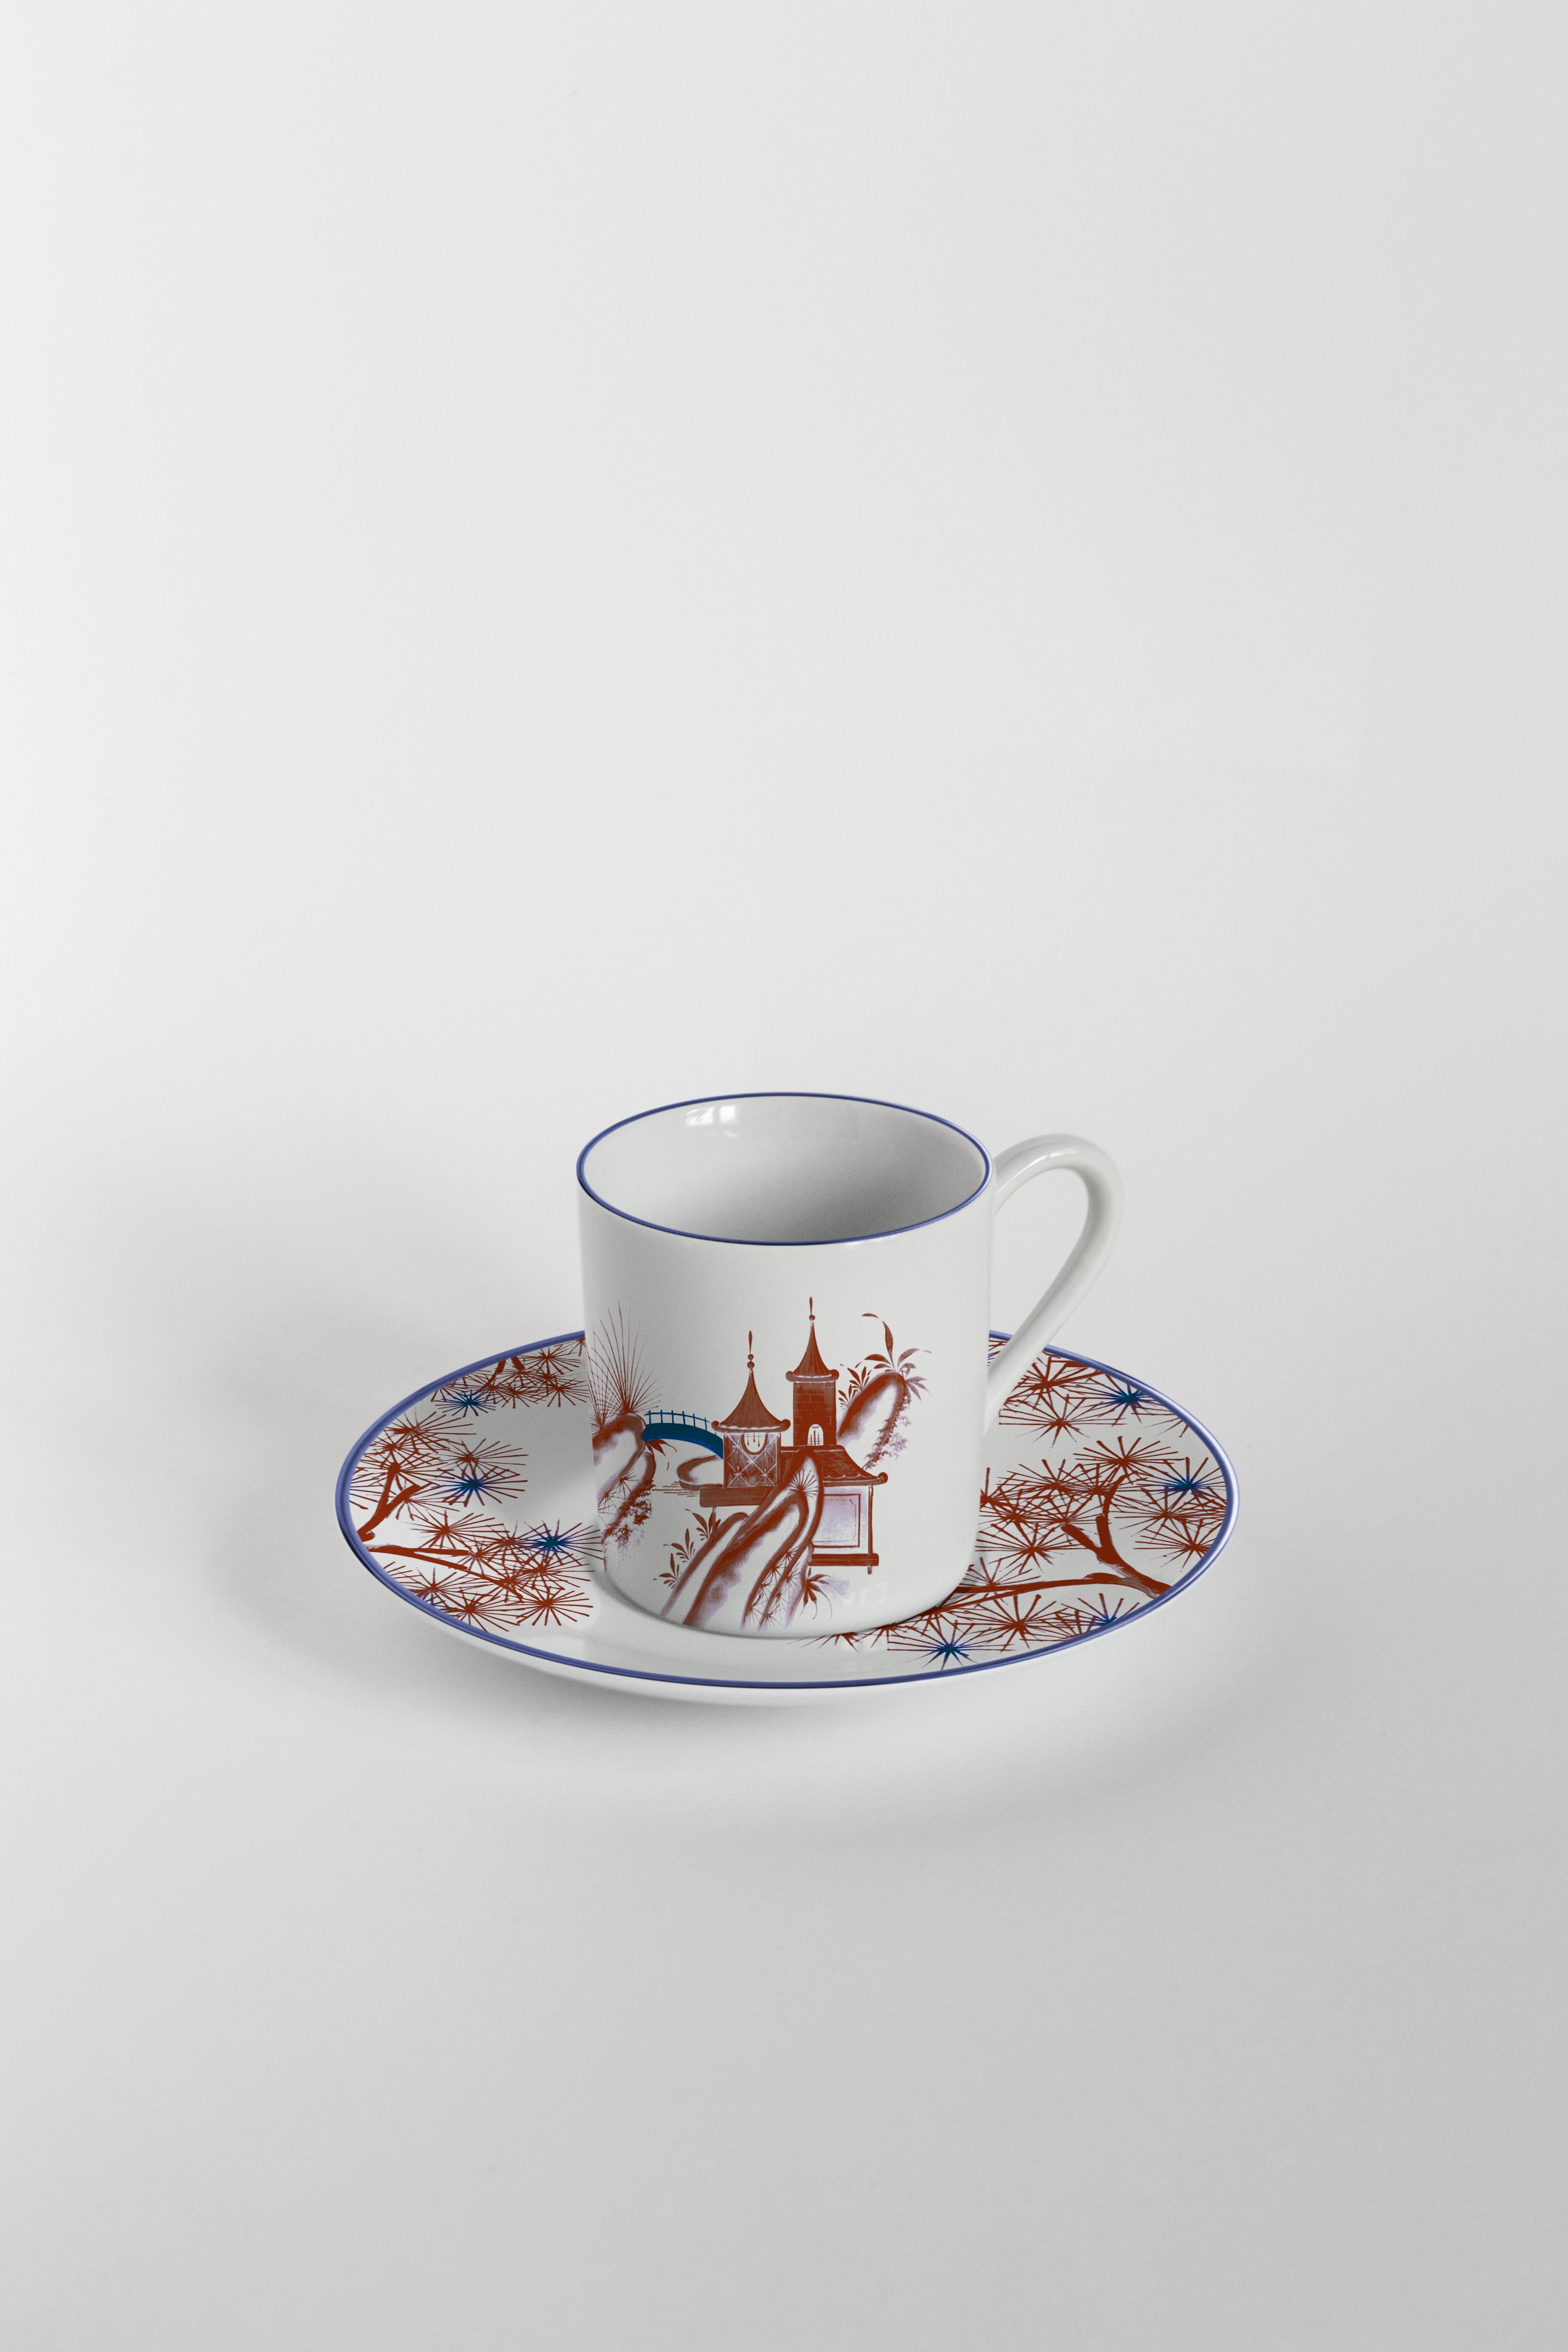 Bordeaux und Blau sind die Grundfarben dieser von Japan inspirierten Tellerkollektion, in der sich alte japanische Szenen an den Flüssen eines Feensees abspielen.
Kaffeeset mit 6 Kaffeetassen und Tellern.